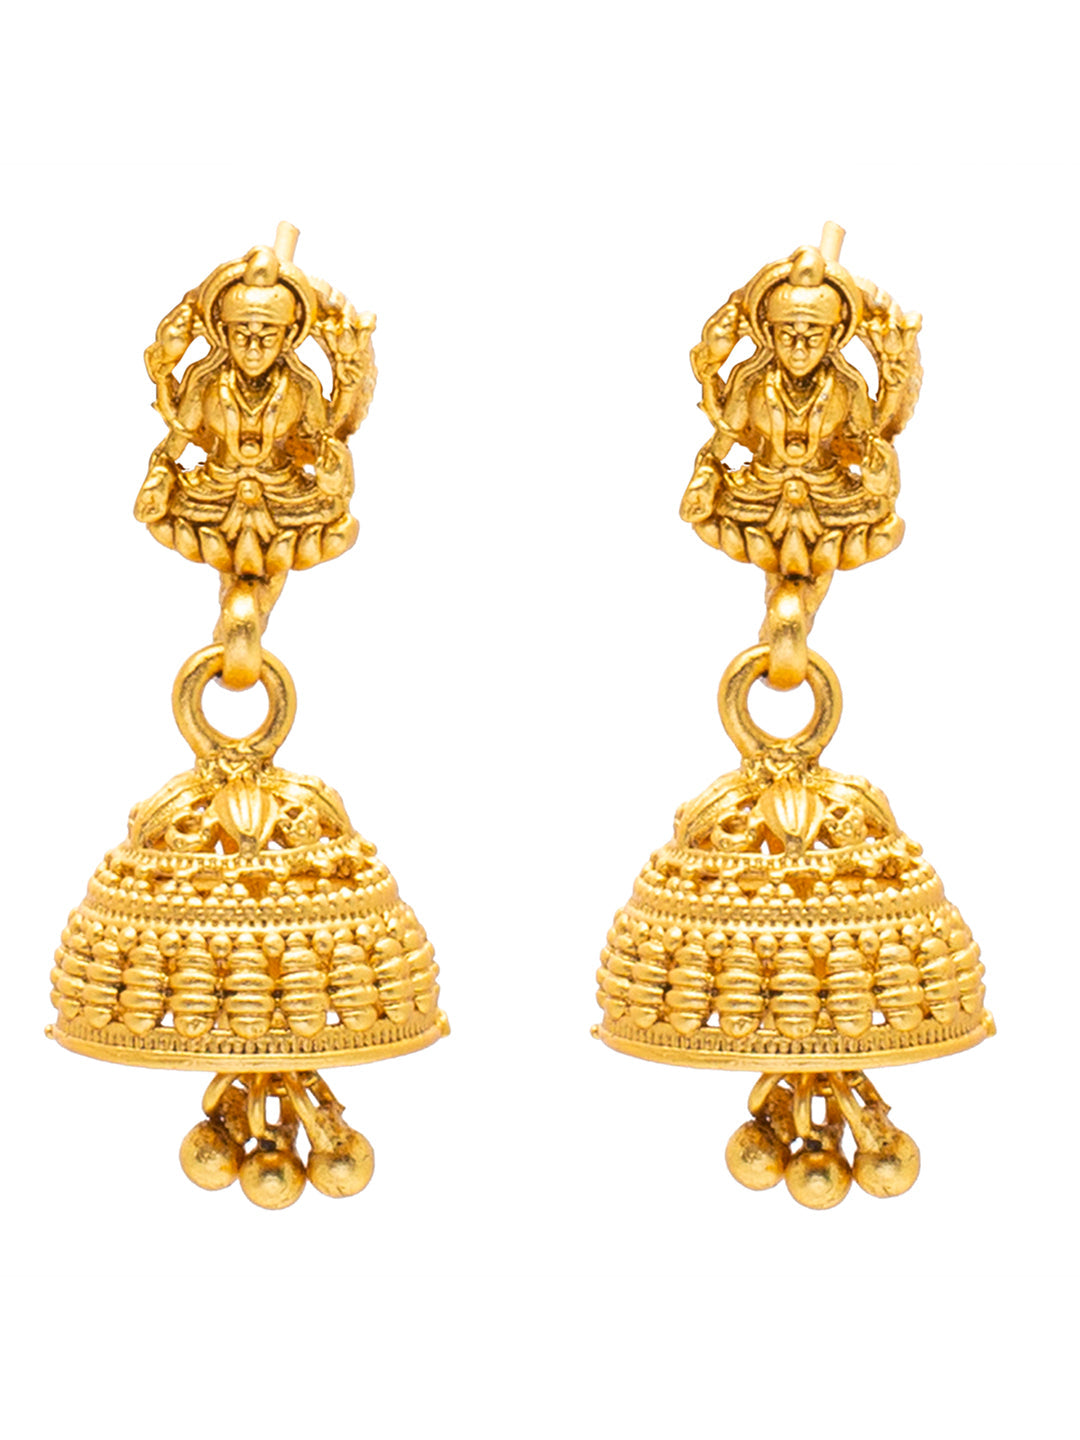 Temple Jewellery - 22K Gold 'Pallaki' Jhumkas (Buttalu) - Gold Dangle  Earrings - 235-GJH2229 in 27.000 Grams